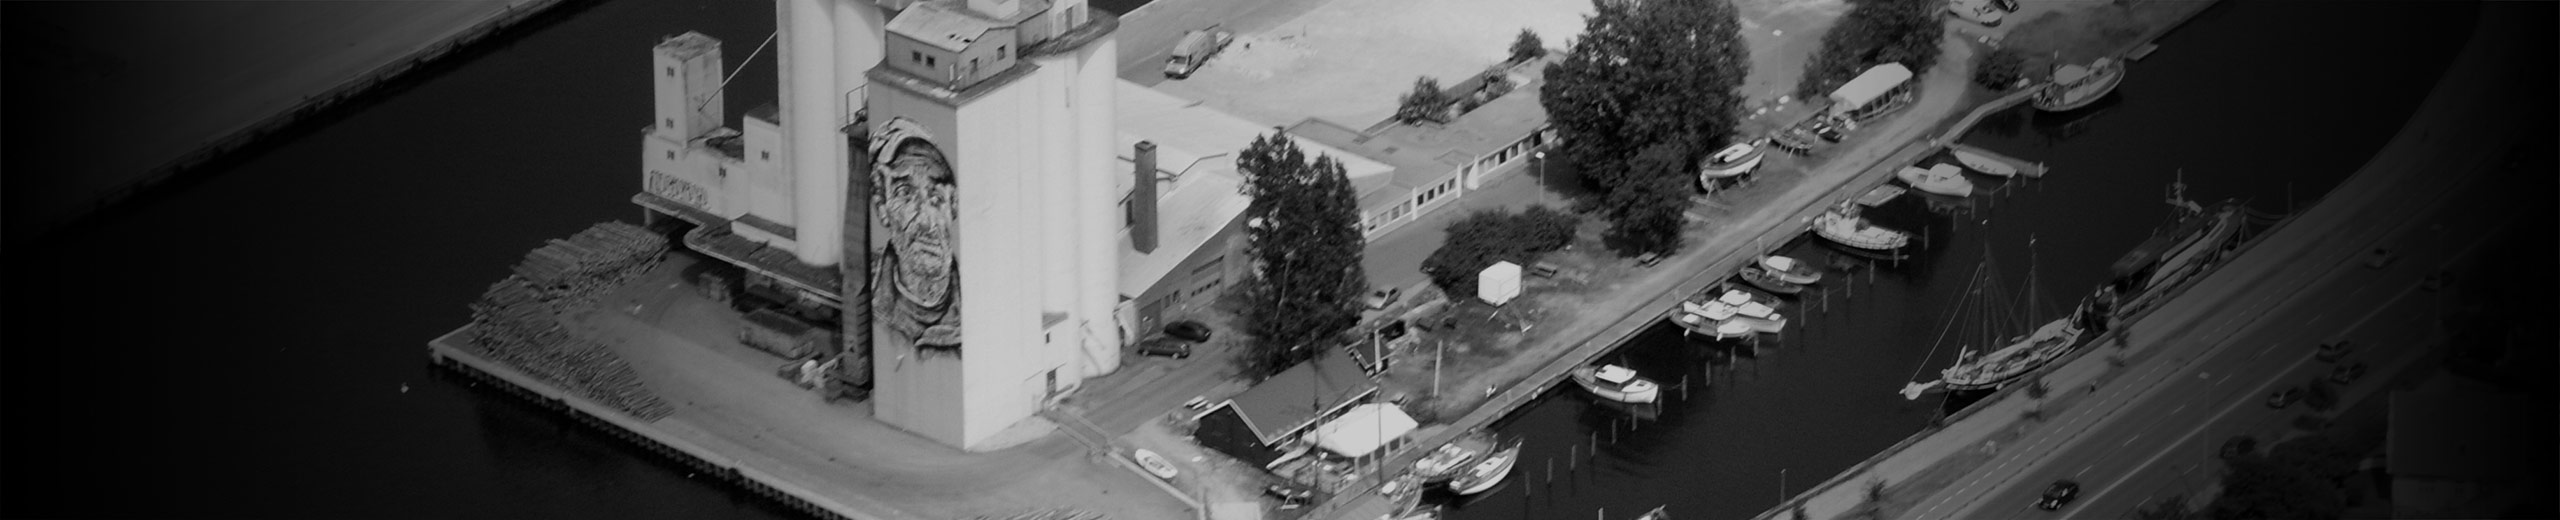 Luftfoto af havnen i Næstved